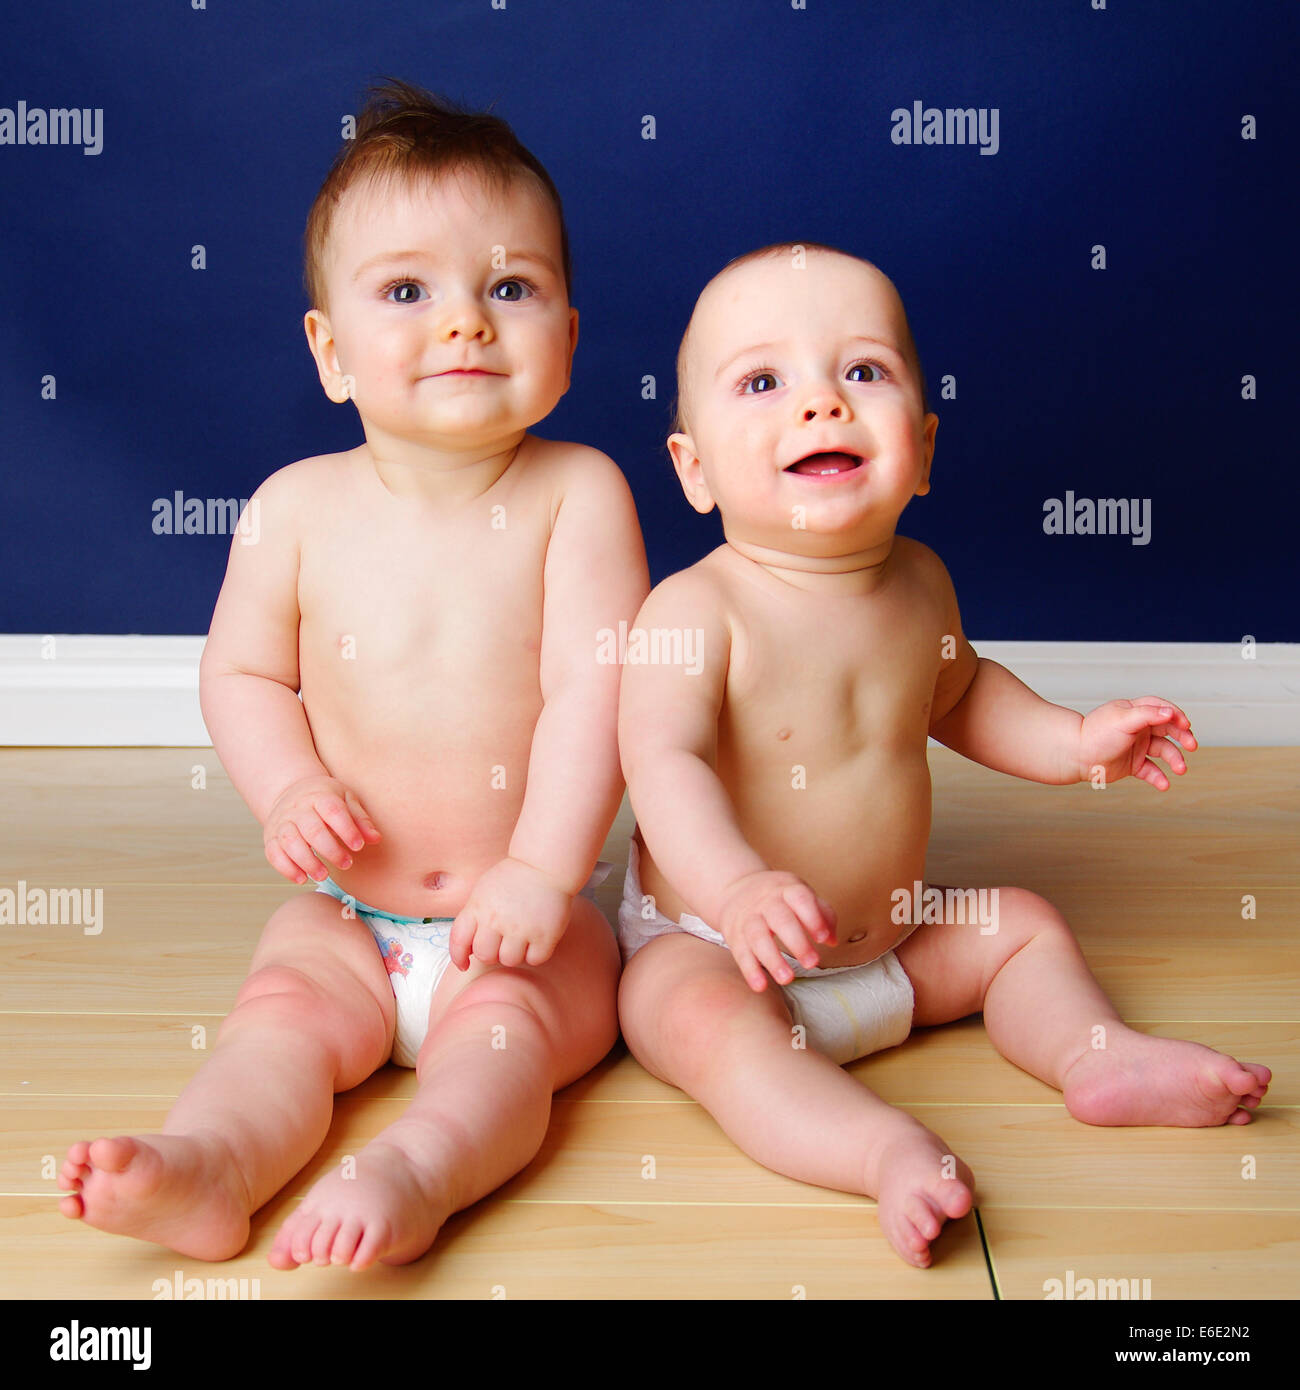 Zwillingsbruder 9 Monate altes Baby jungen sitzen nebeneinander in ihren  Windeln Stockfotografie - Alamy